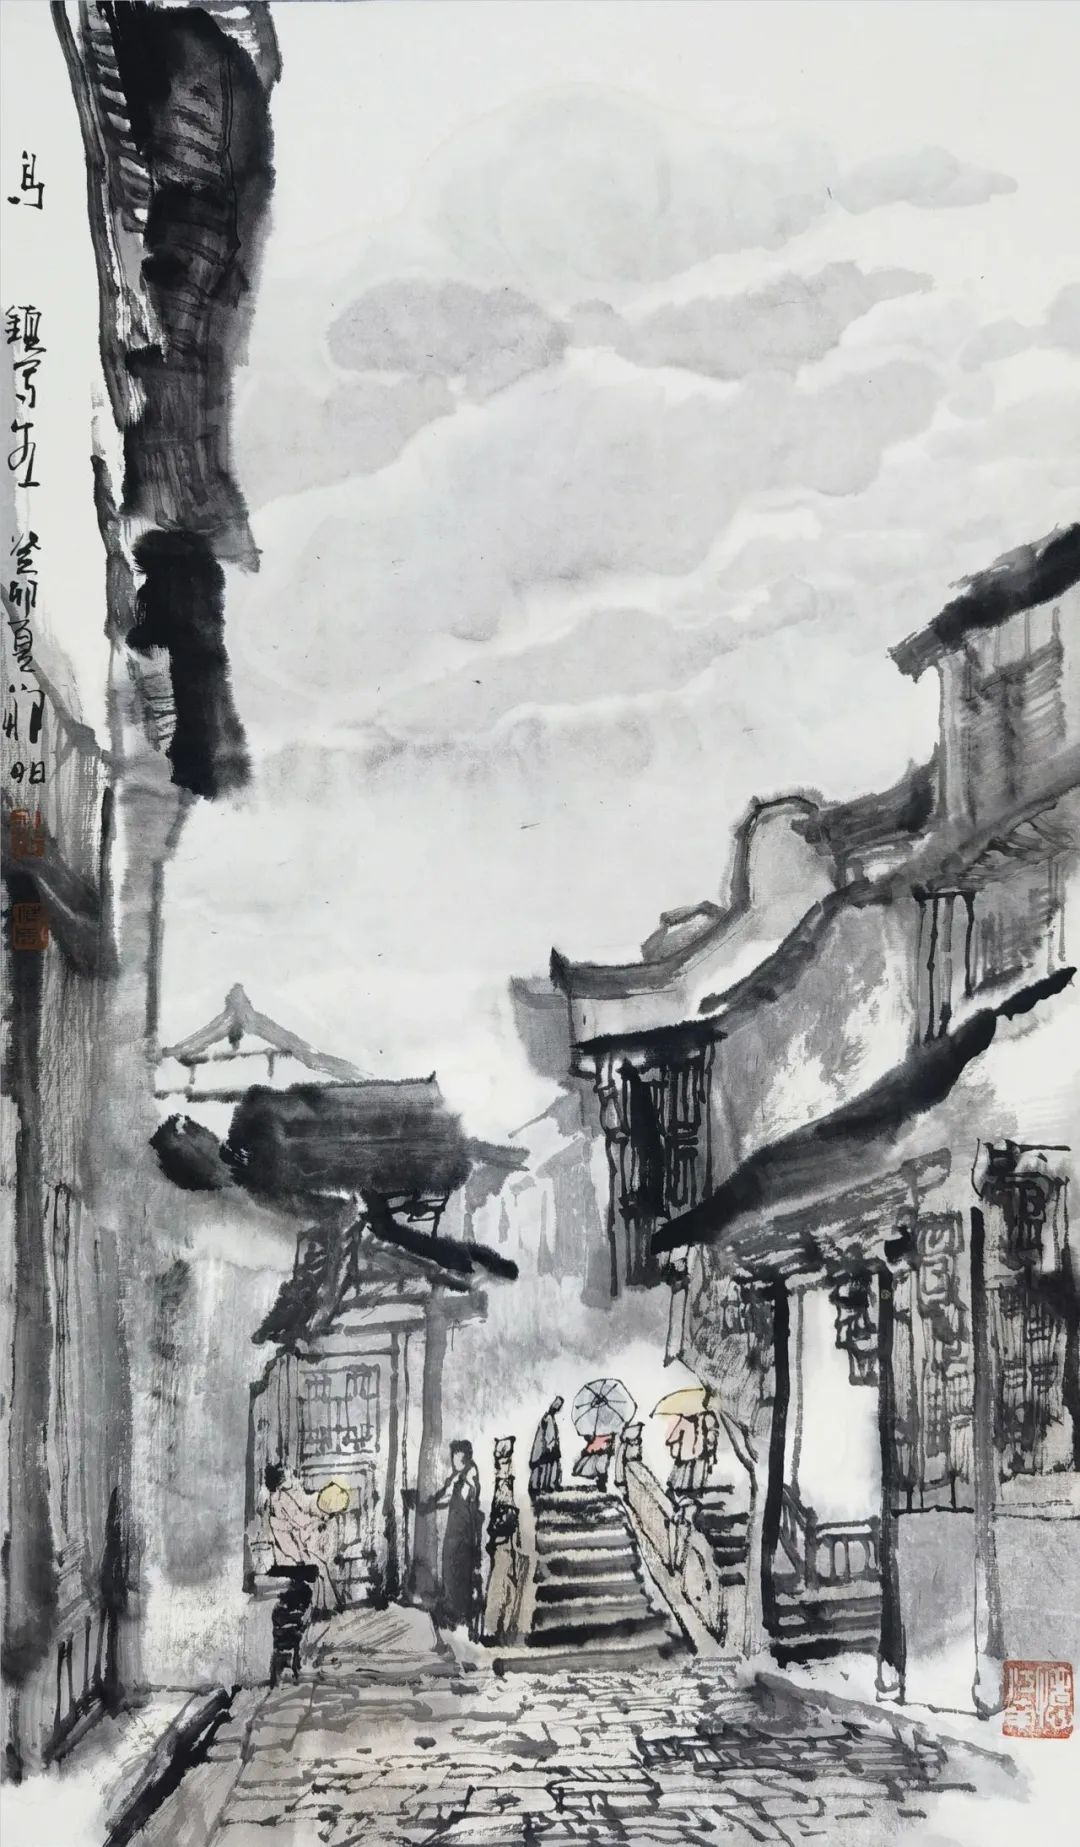 枕水老屋、过街骑楼、宜园……著名画家邹明写生乌镇、南浔